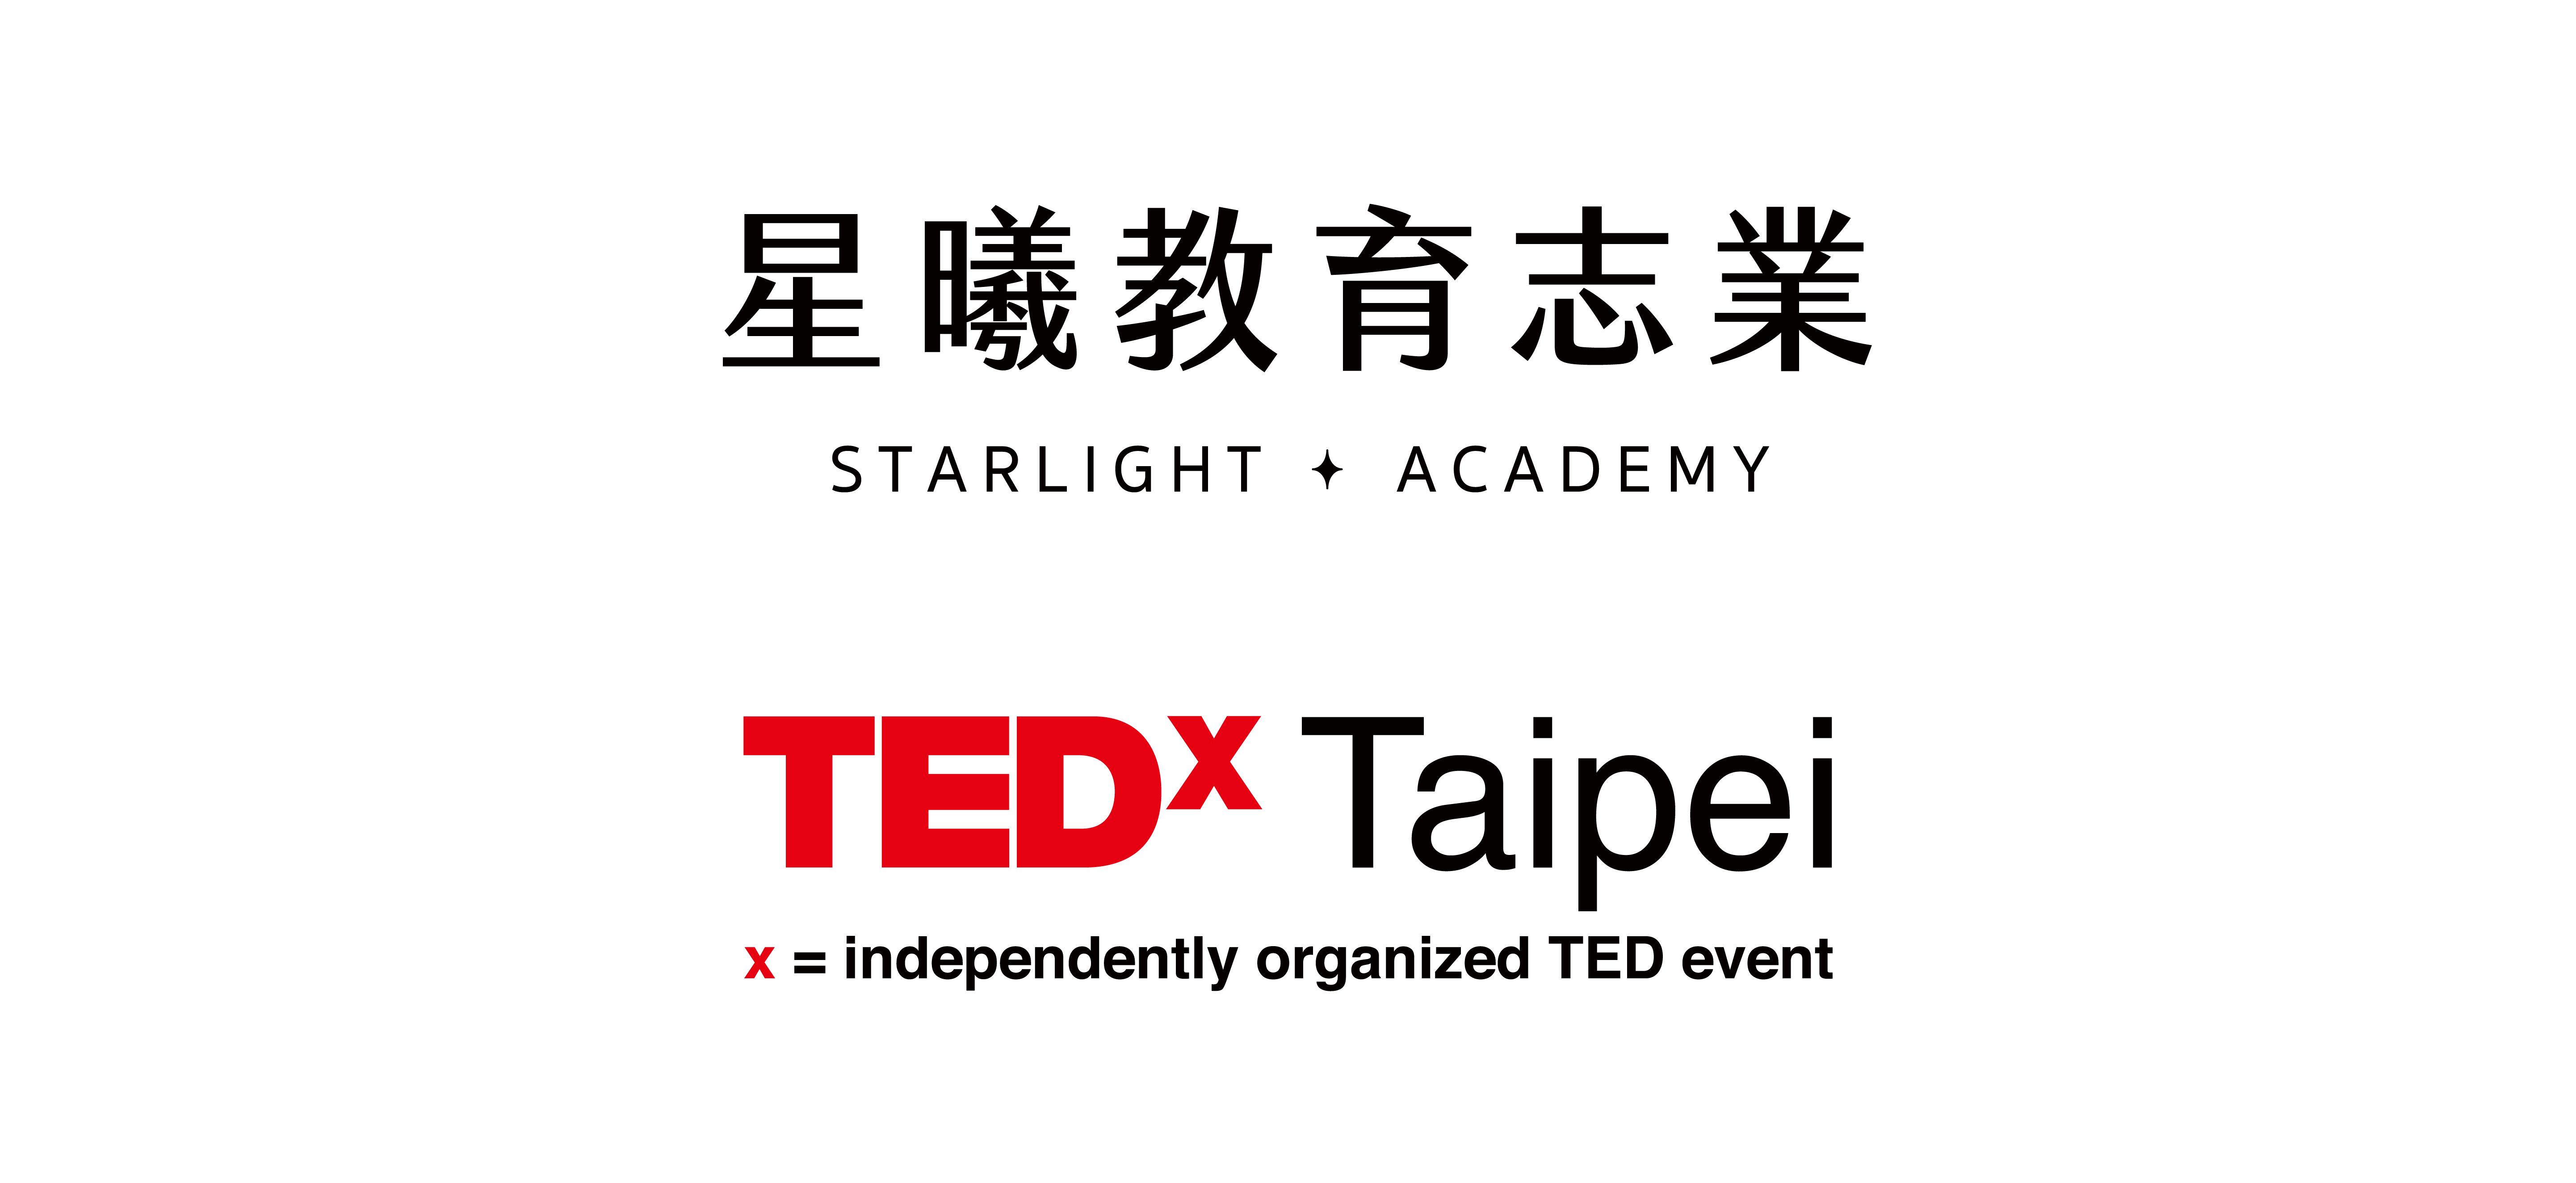 {638386561290585036}_星曦&TEDxTaipei_Logo(1).png